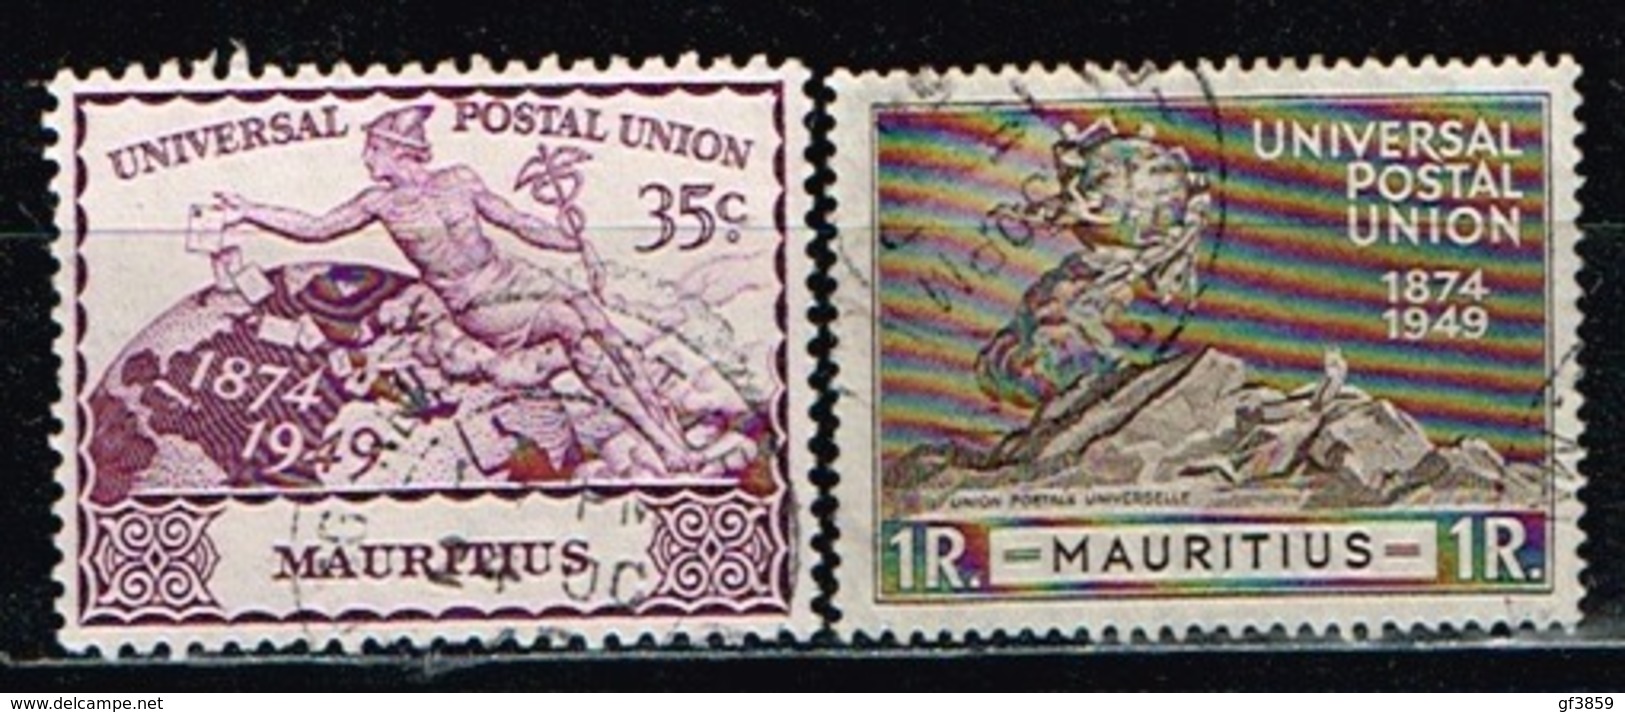 ILE MAURICE/MAURITIUS / Oblitérés/Used/ 1949 - 75éme Anniversaire De L'UPU - Mauritius (...-1967)